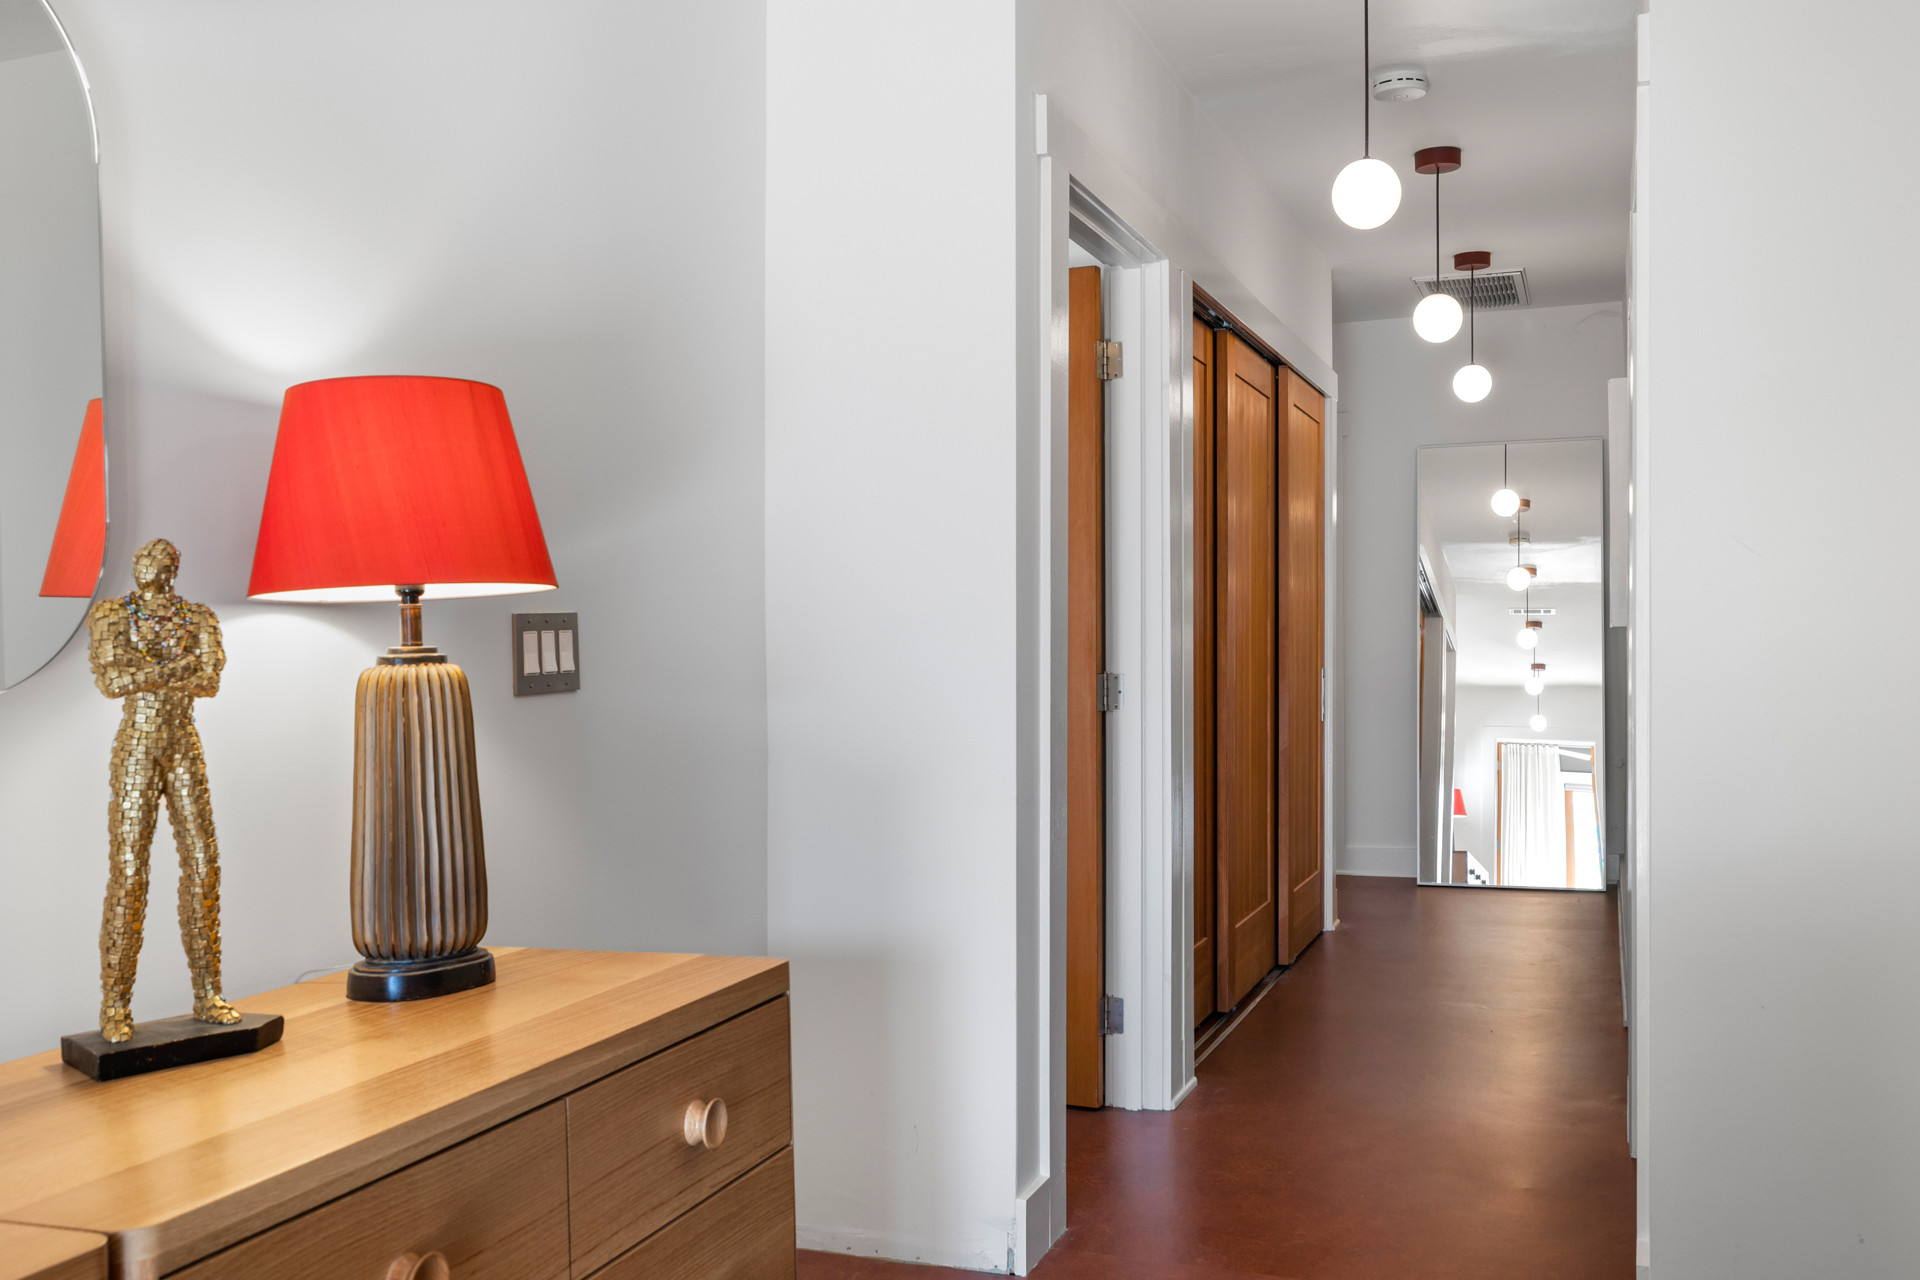 Van Nuys / Guest Bedroom Addition / Hallway